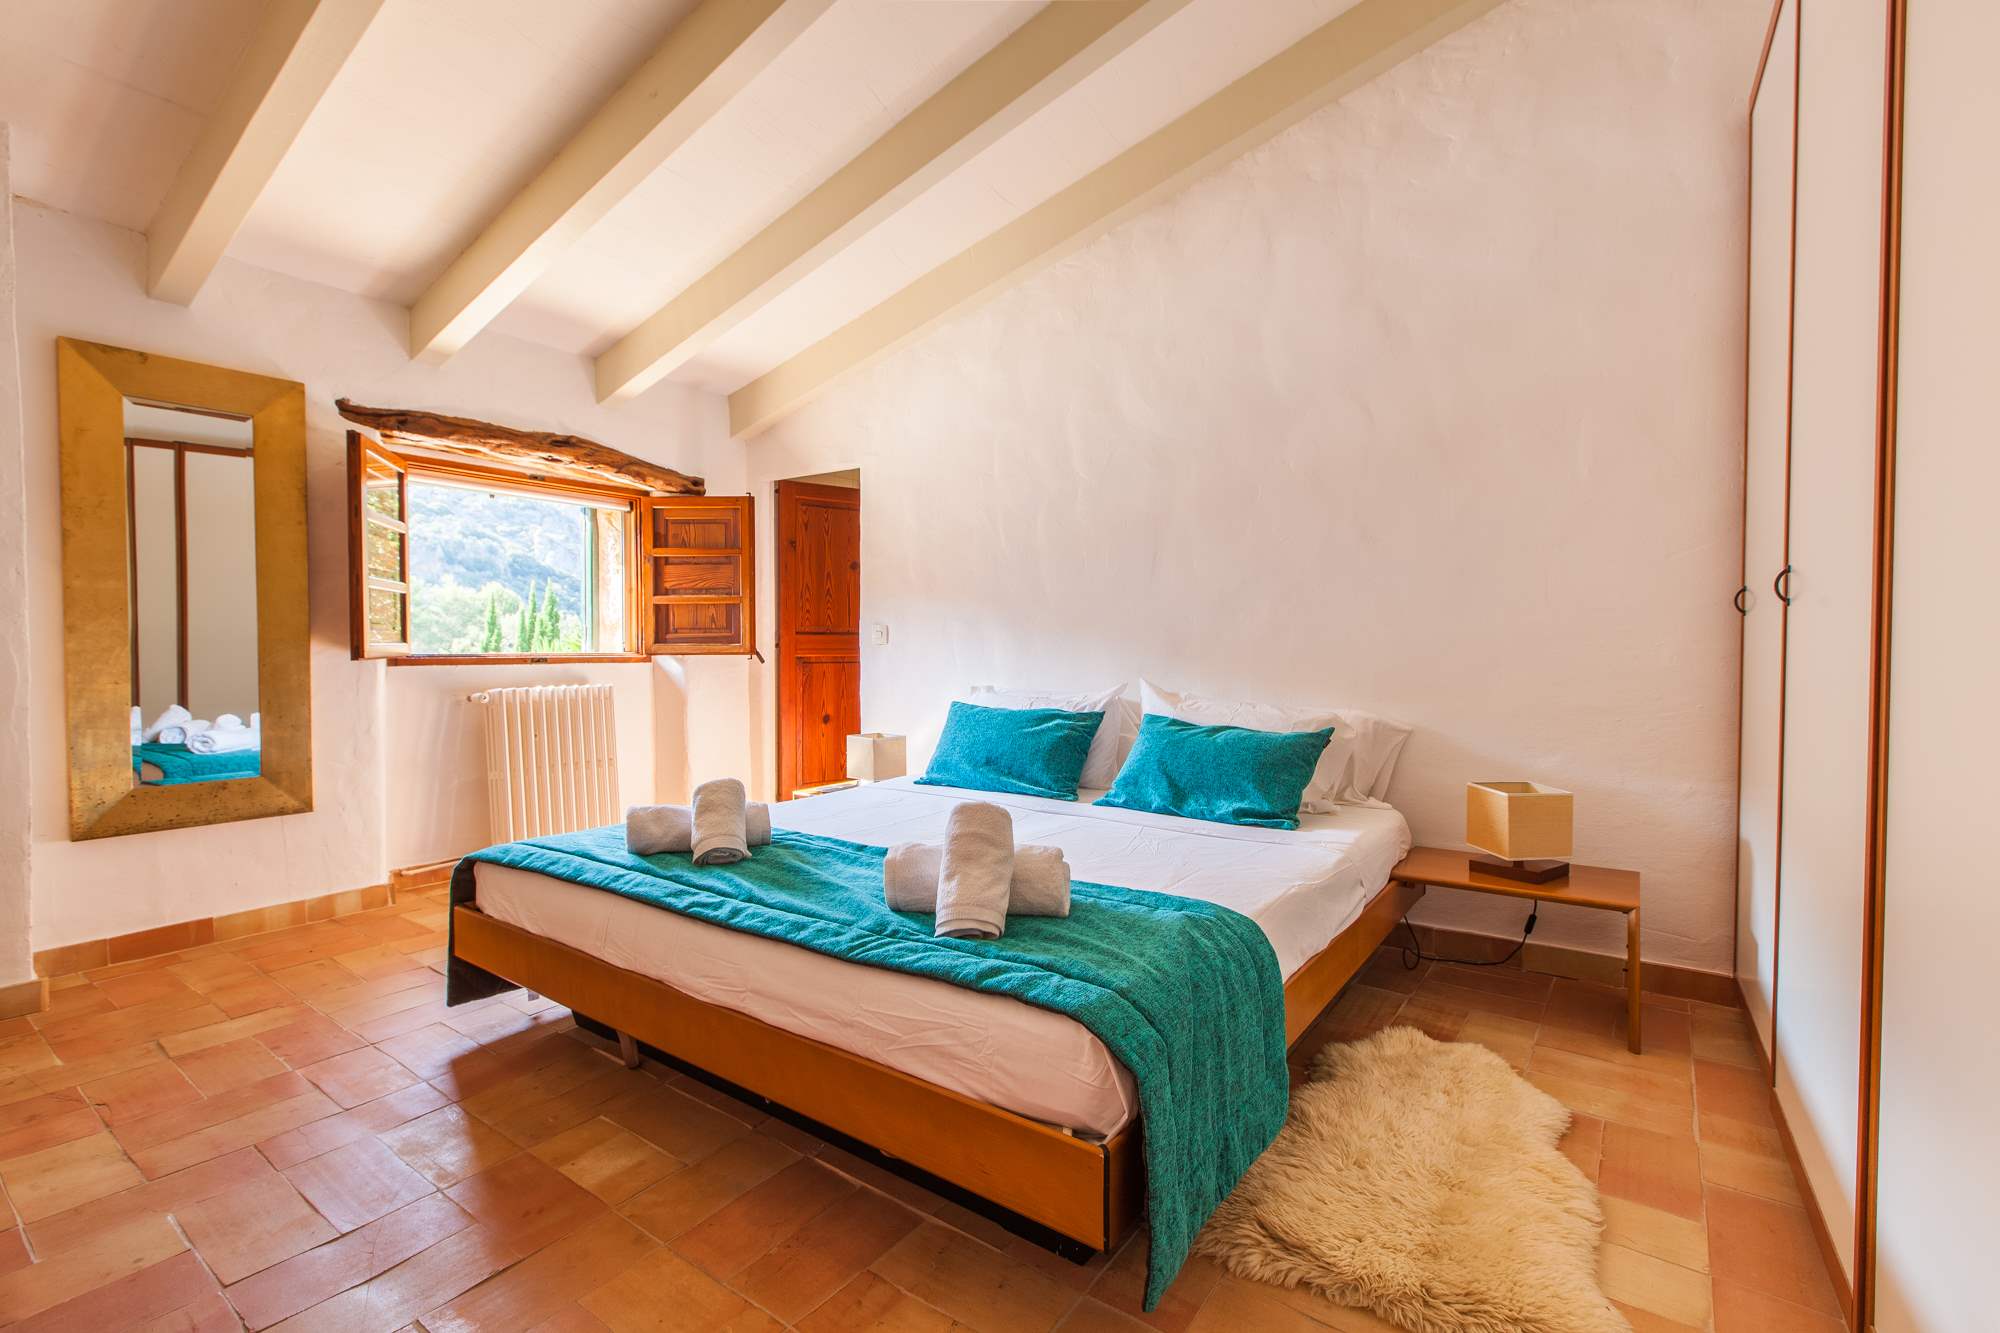 Es Clotal, 2 bedroom, 2 bedroom villa in Pollensa & Puerto Pollensa, Majorca Photo #15